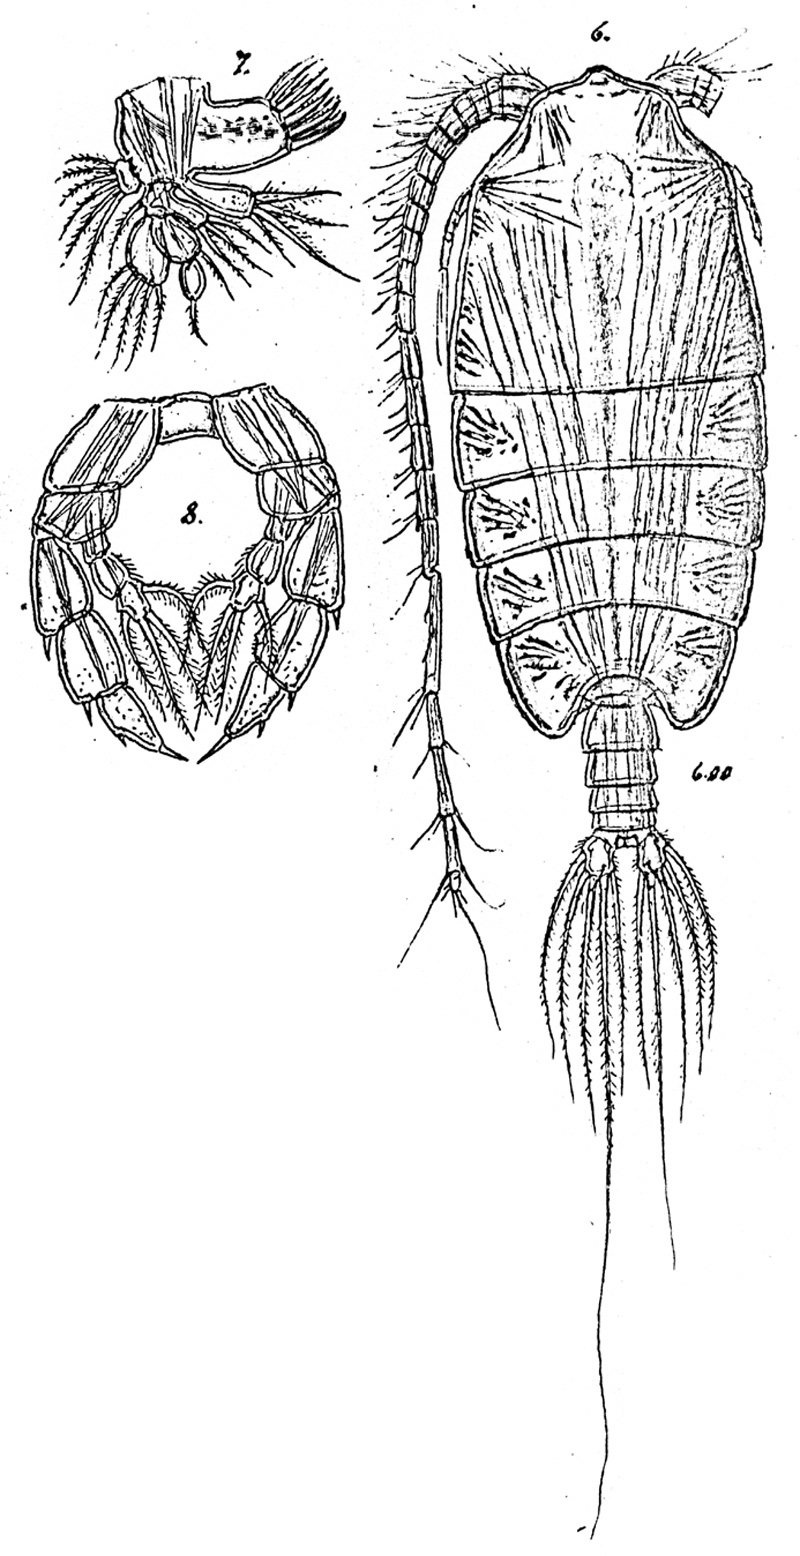 Espèce Pontoptilus robustus - Planche 2 de figures morphologiques